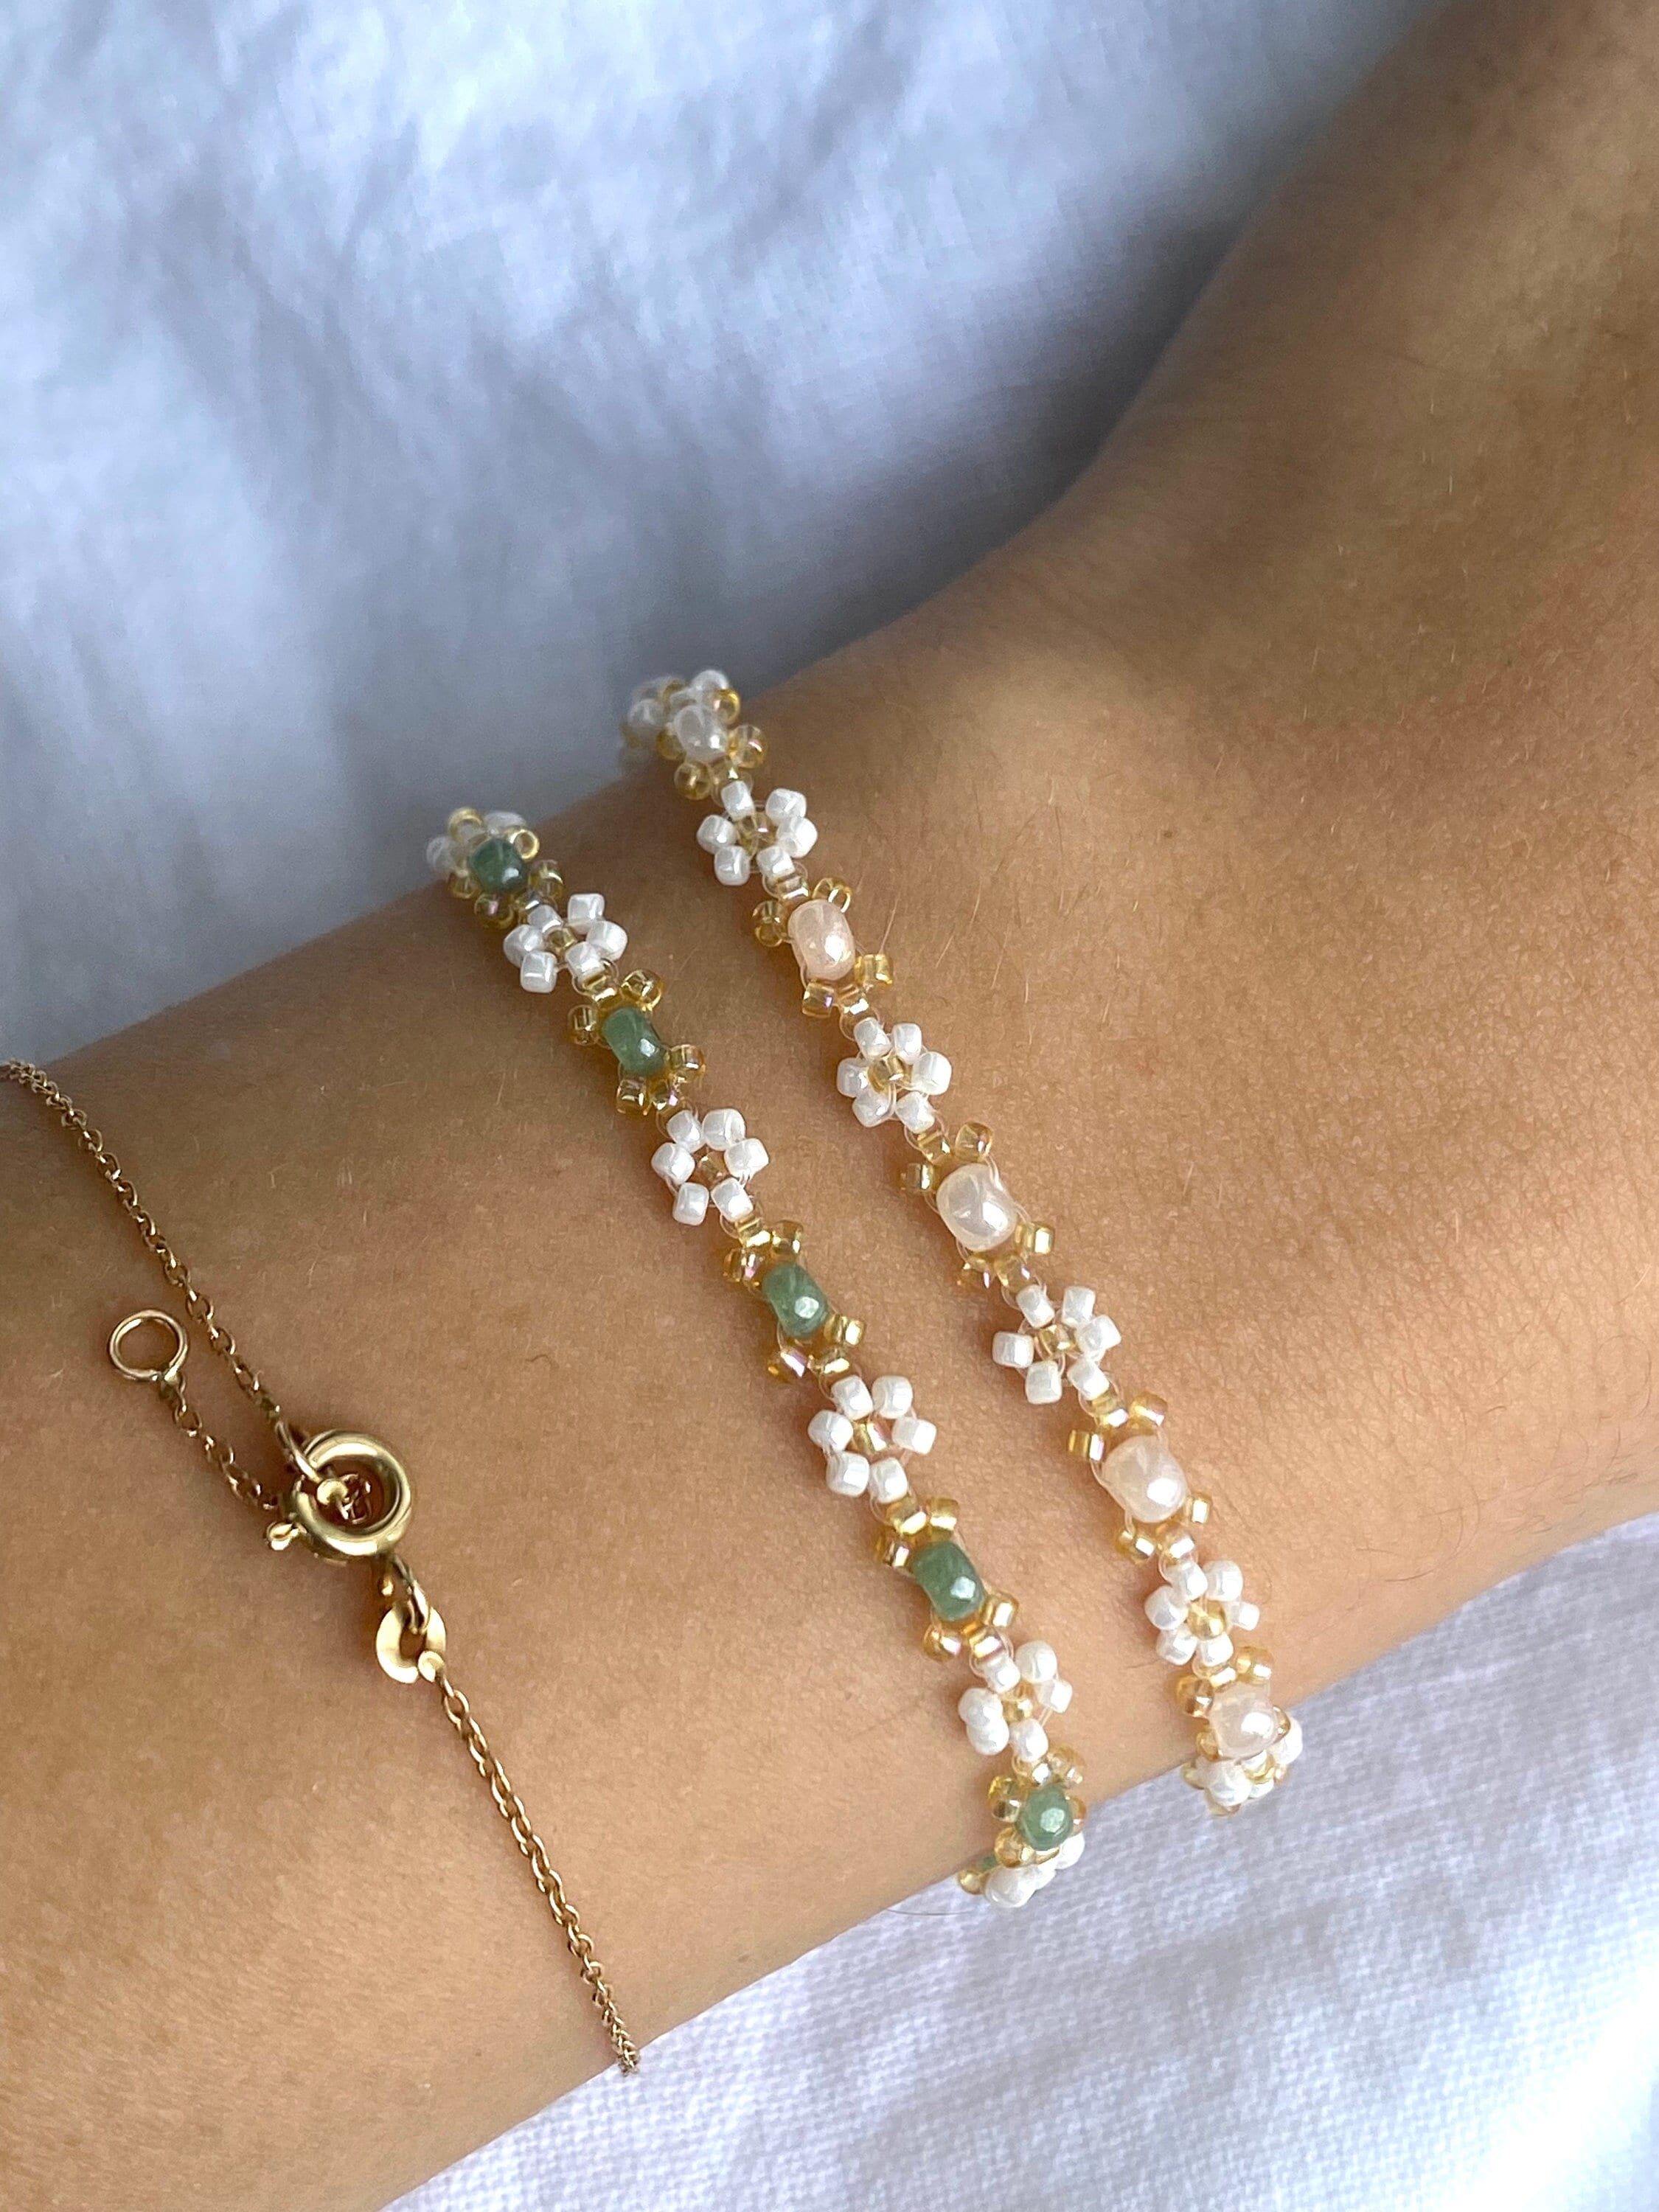 Kid bracelets- little girl bracelets- smiley face bracelet- daisy flower  bracelet- fits for girls- summer gifts- birthday gifts for girls